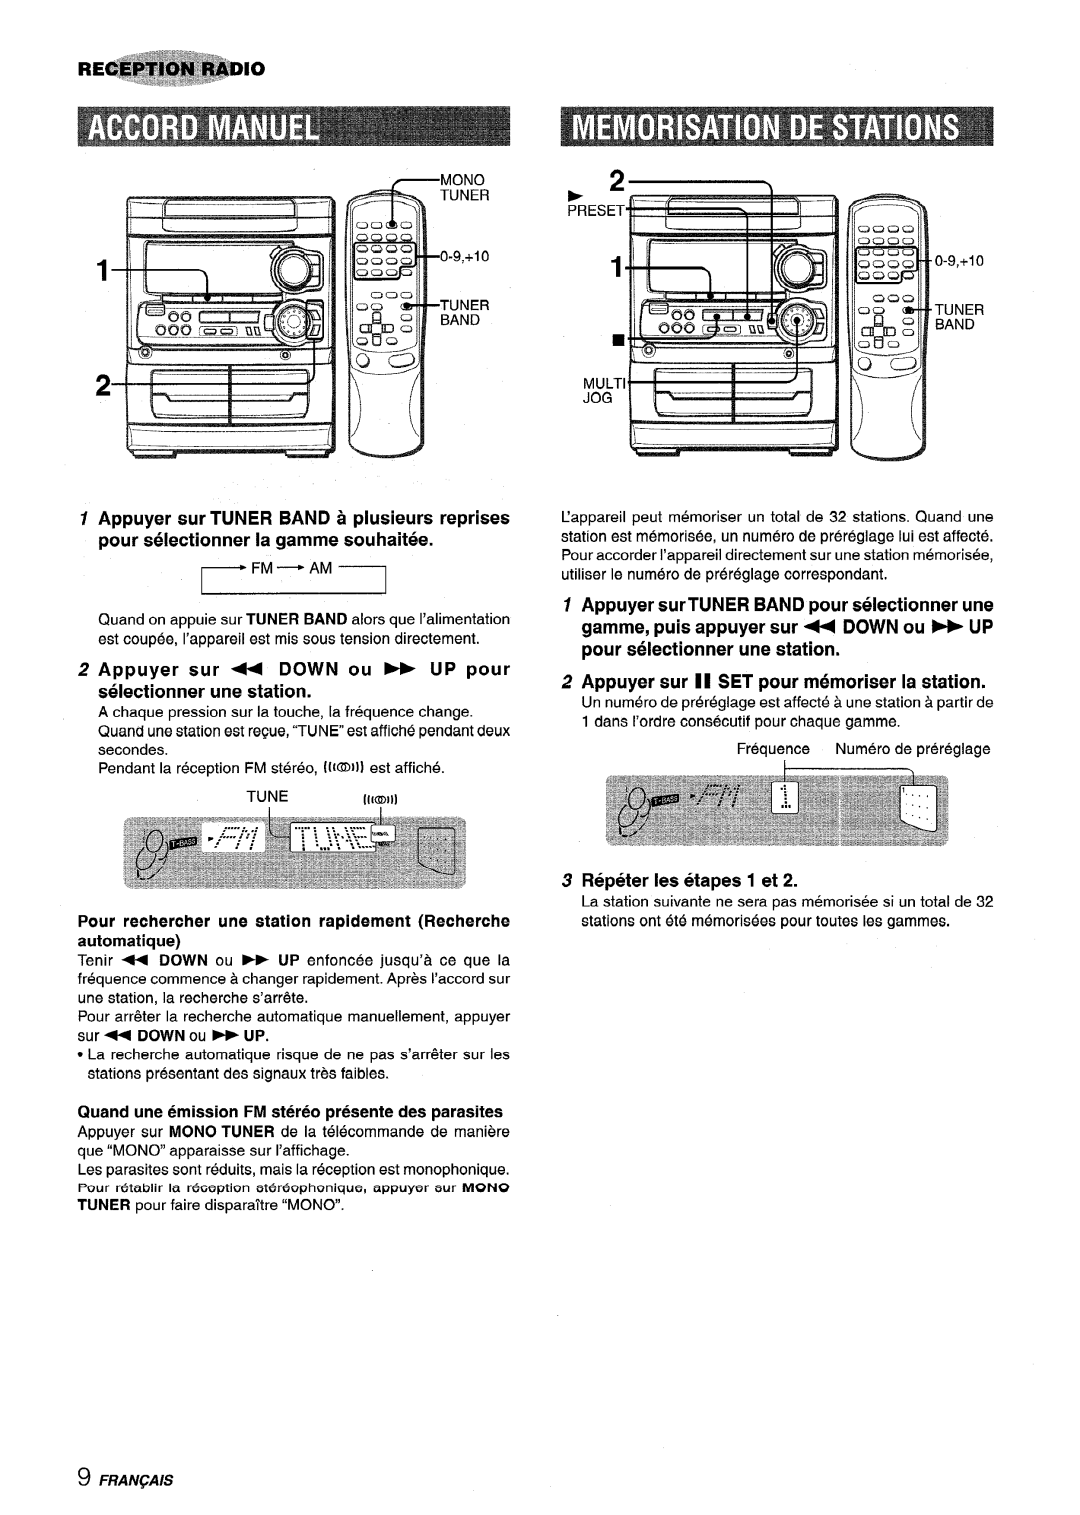 Sony NSX-MT320 Fm - Am I, Appuyer sur - DOWN ou UP pour selectionner une station, Repeter Ies etapes 1 et, 0.9,+10, “’T’ 